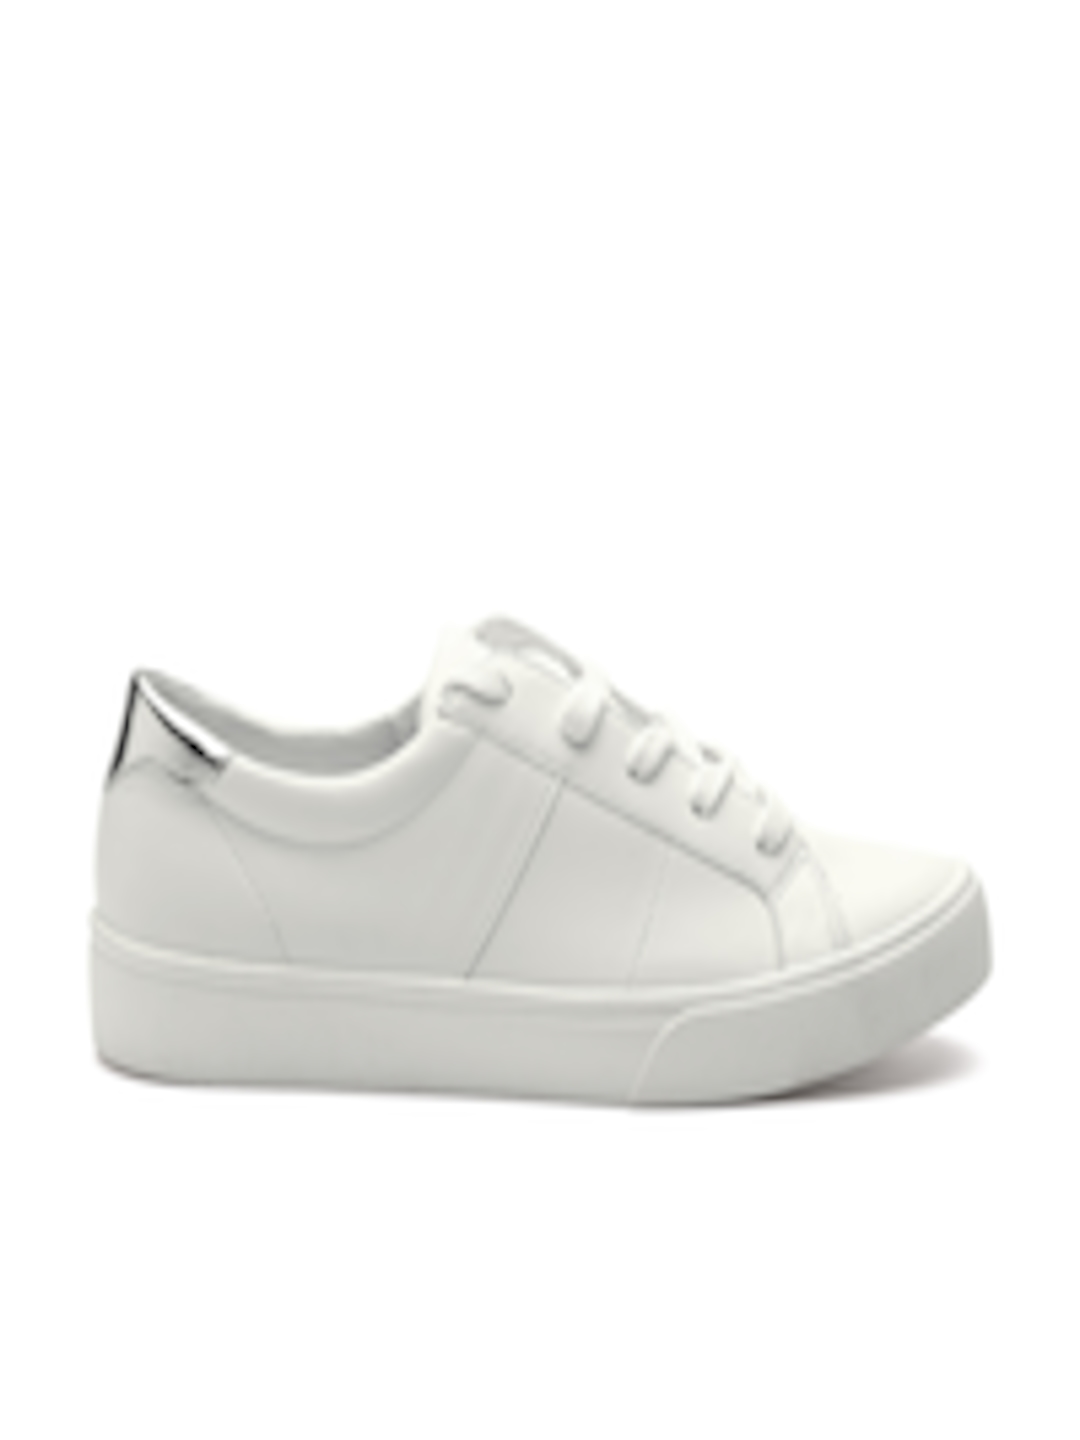 Buy MANGO Women White Sneakers - Casual Shoes for Women 2141678 | Myntra